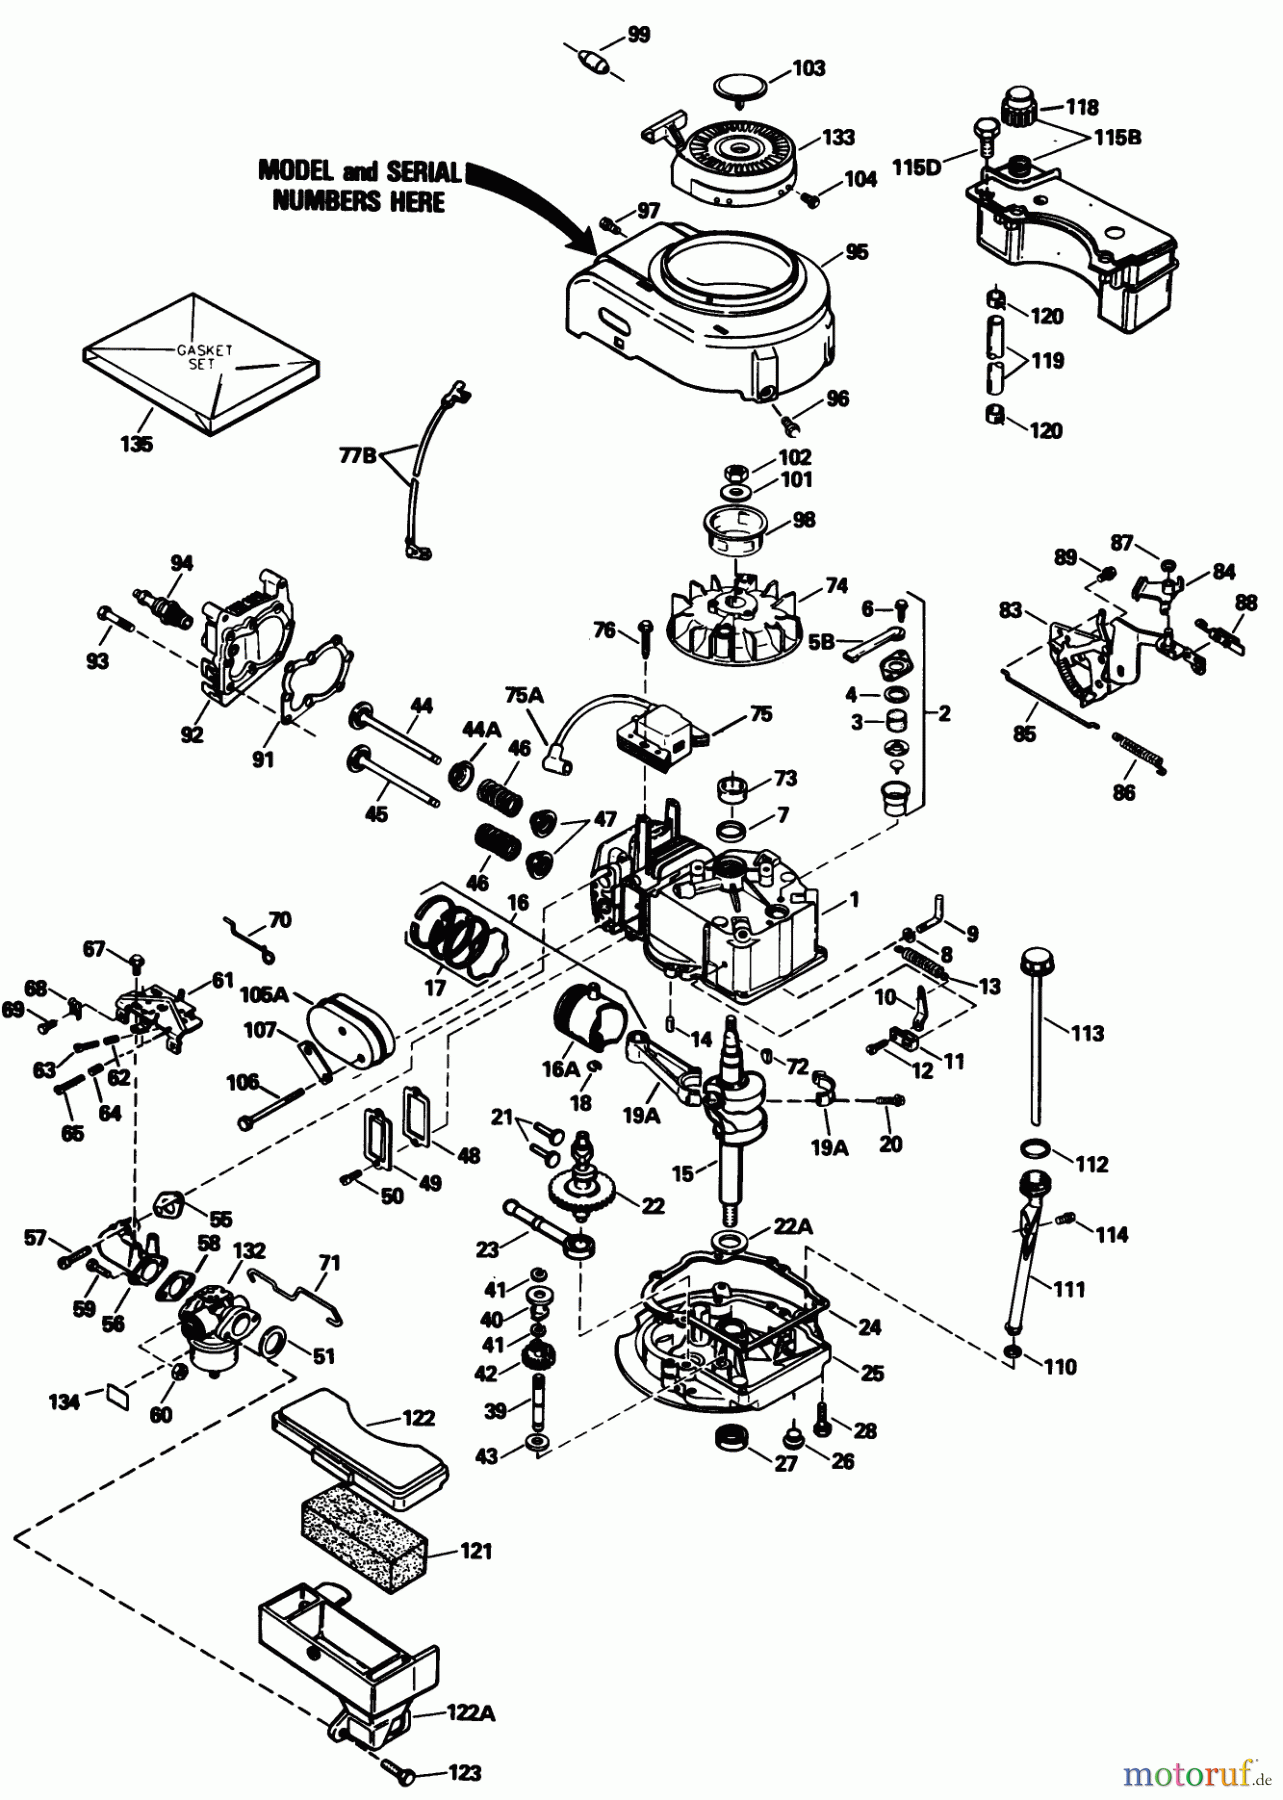  Toro Neu Mowers, Walk-Behind Seite 1 20631 - Toro Lawnmower, 1989 (9000001-9999999) ENGINE MODEL NO. TVS105-53112F